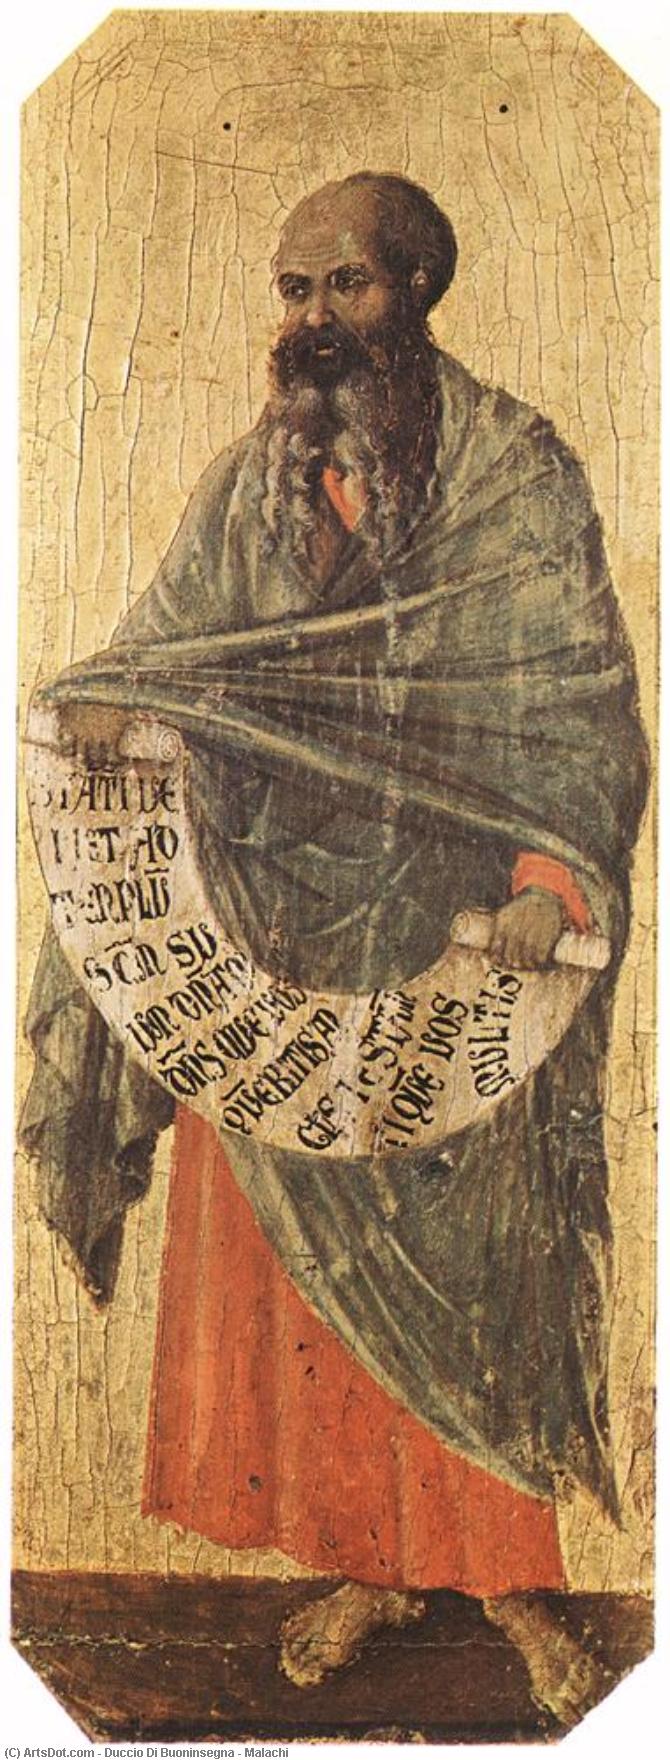 WikiOO.org - Encyclopedia of Fine Arts - Maleri, Artwork Duccio Di Buoninsegna - Malachi